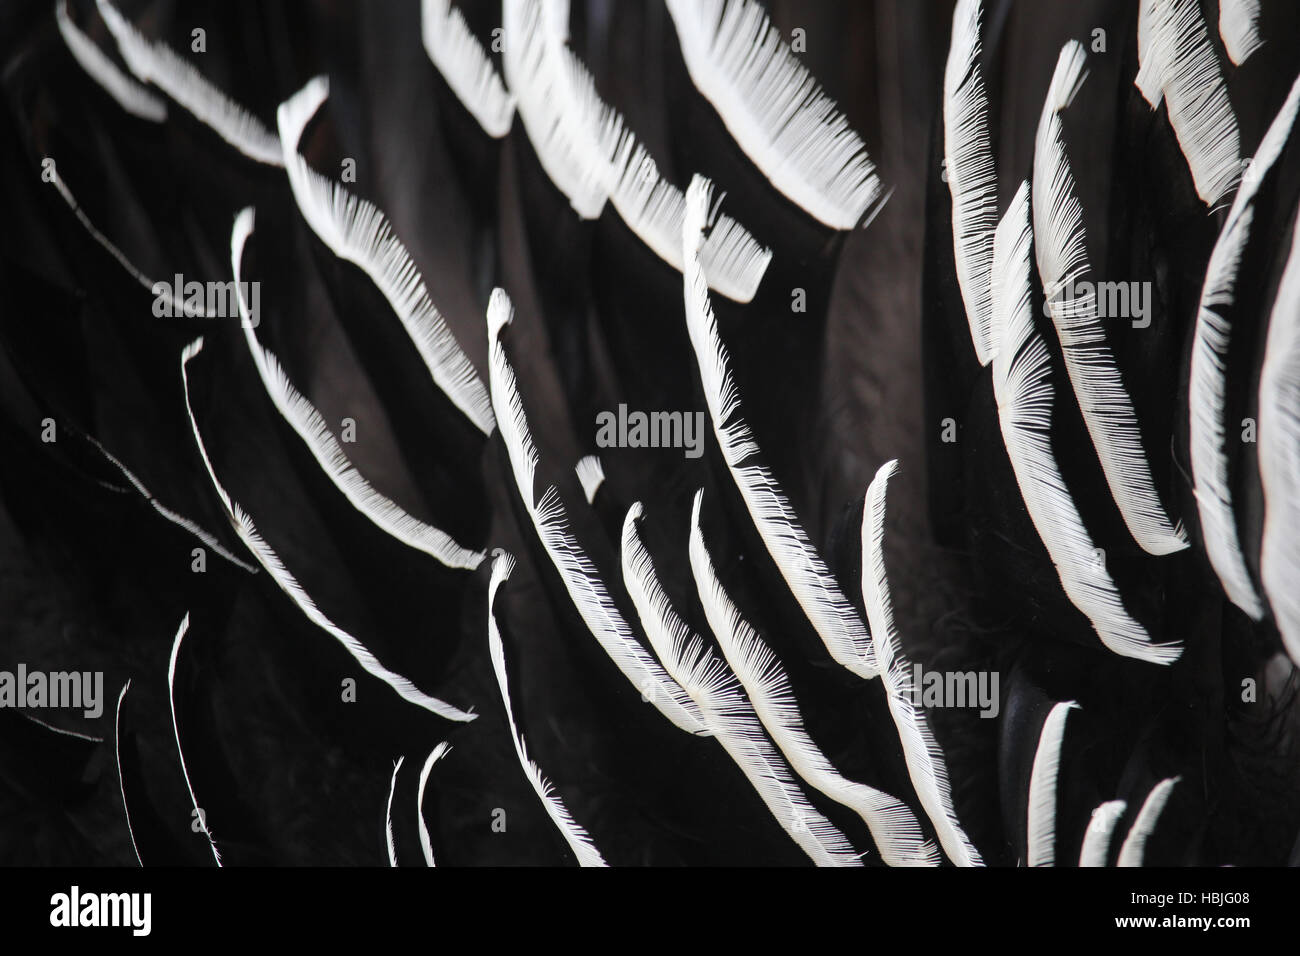 turkey feathers Stock Photo